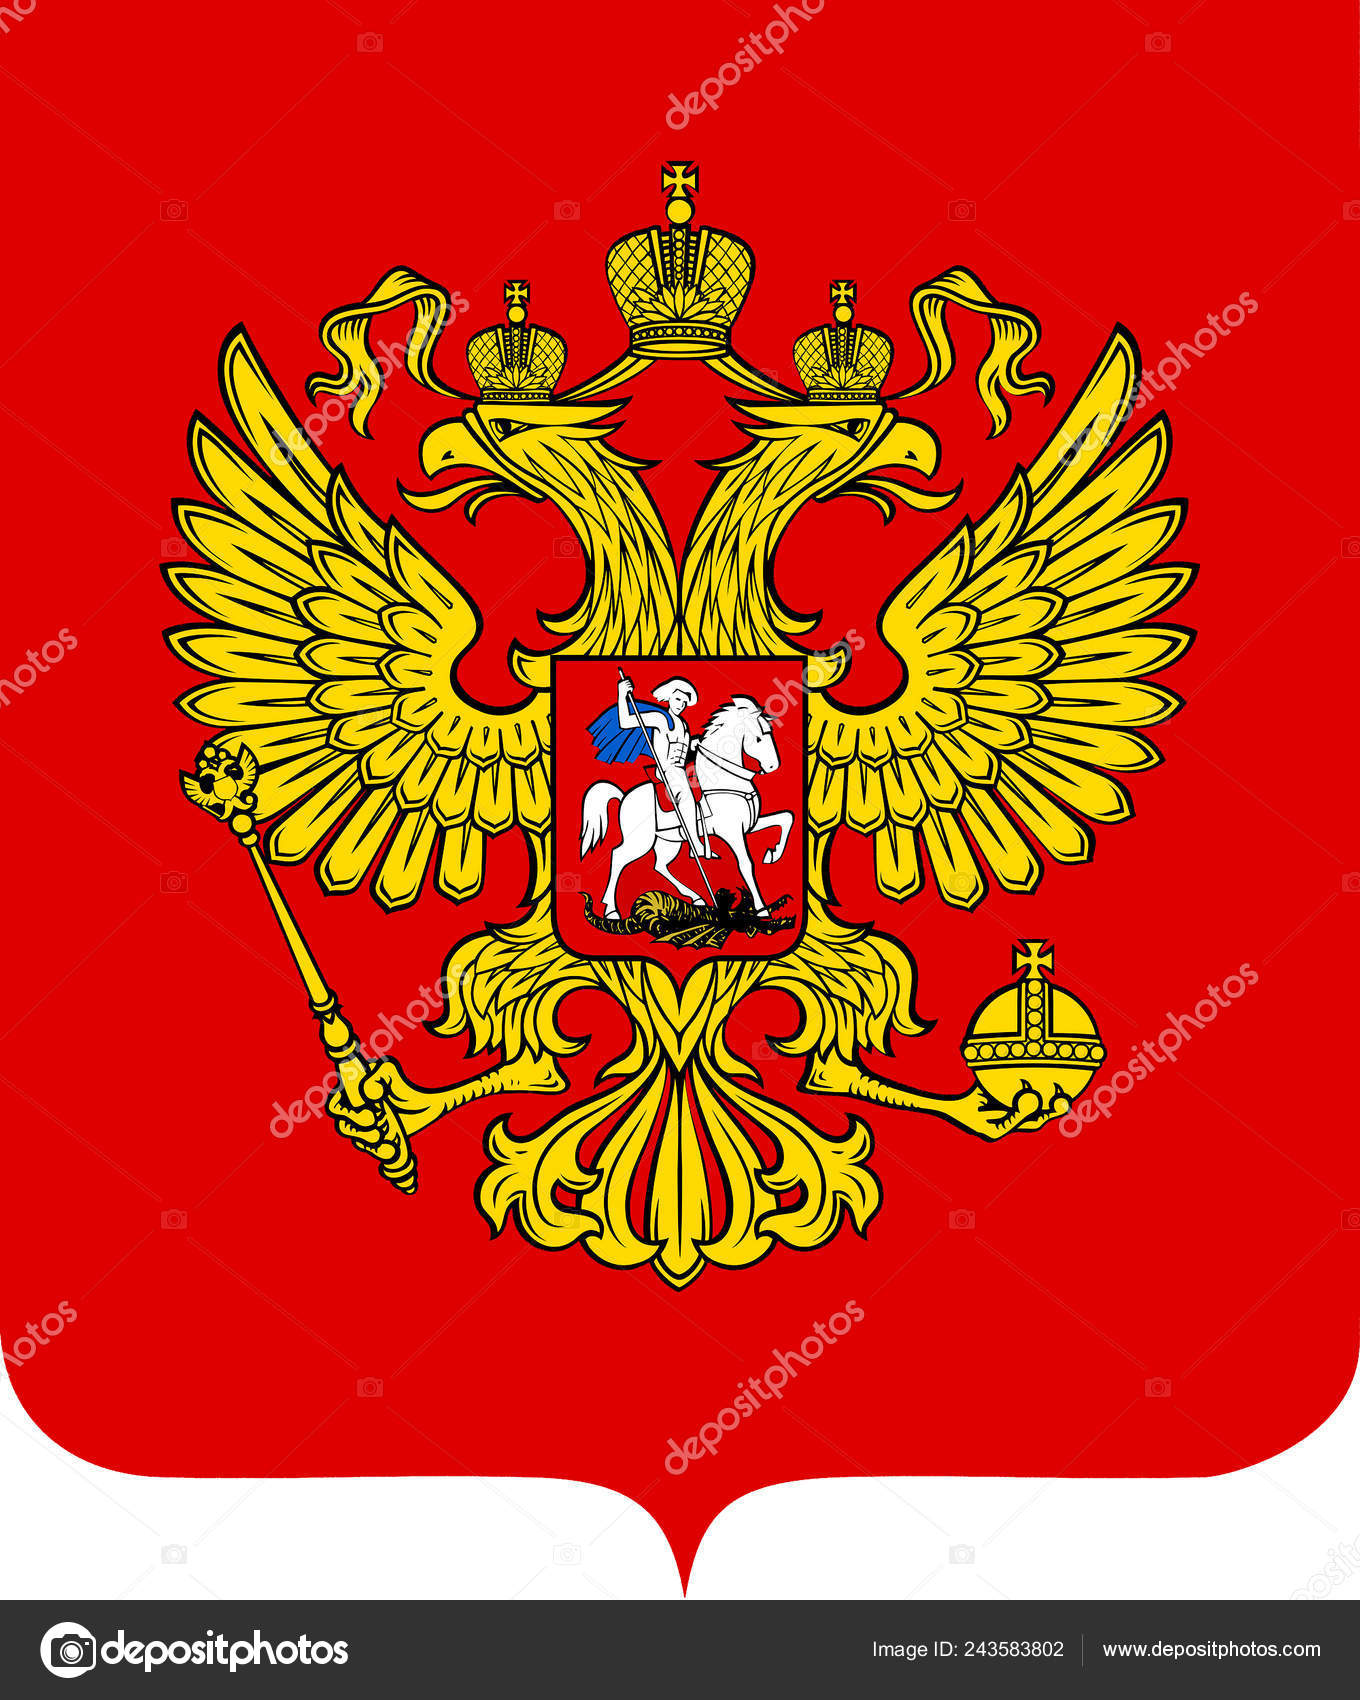 Двуглавый Орел вновь утвержден гербом России